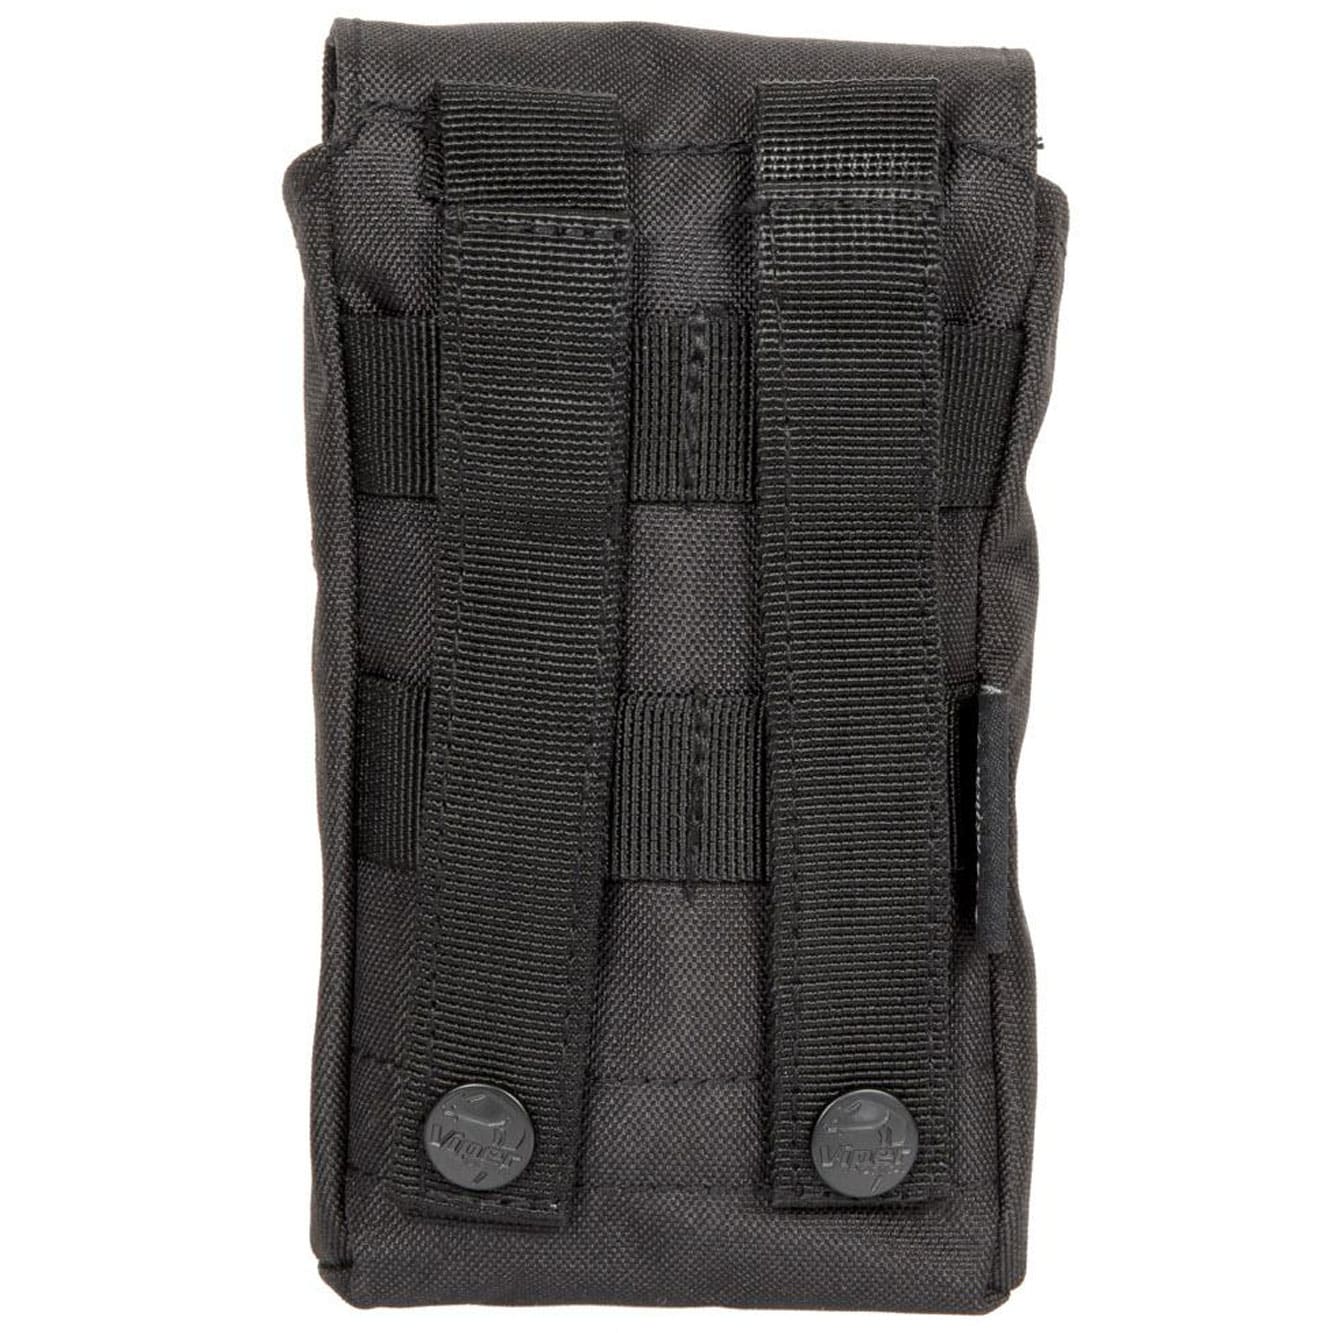 Apteczka Viper Tactical Aid Kit - Black